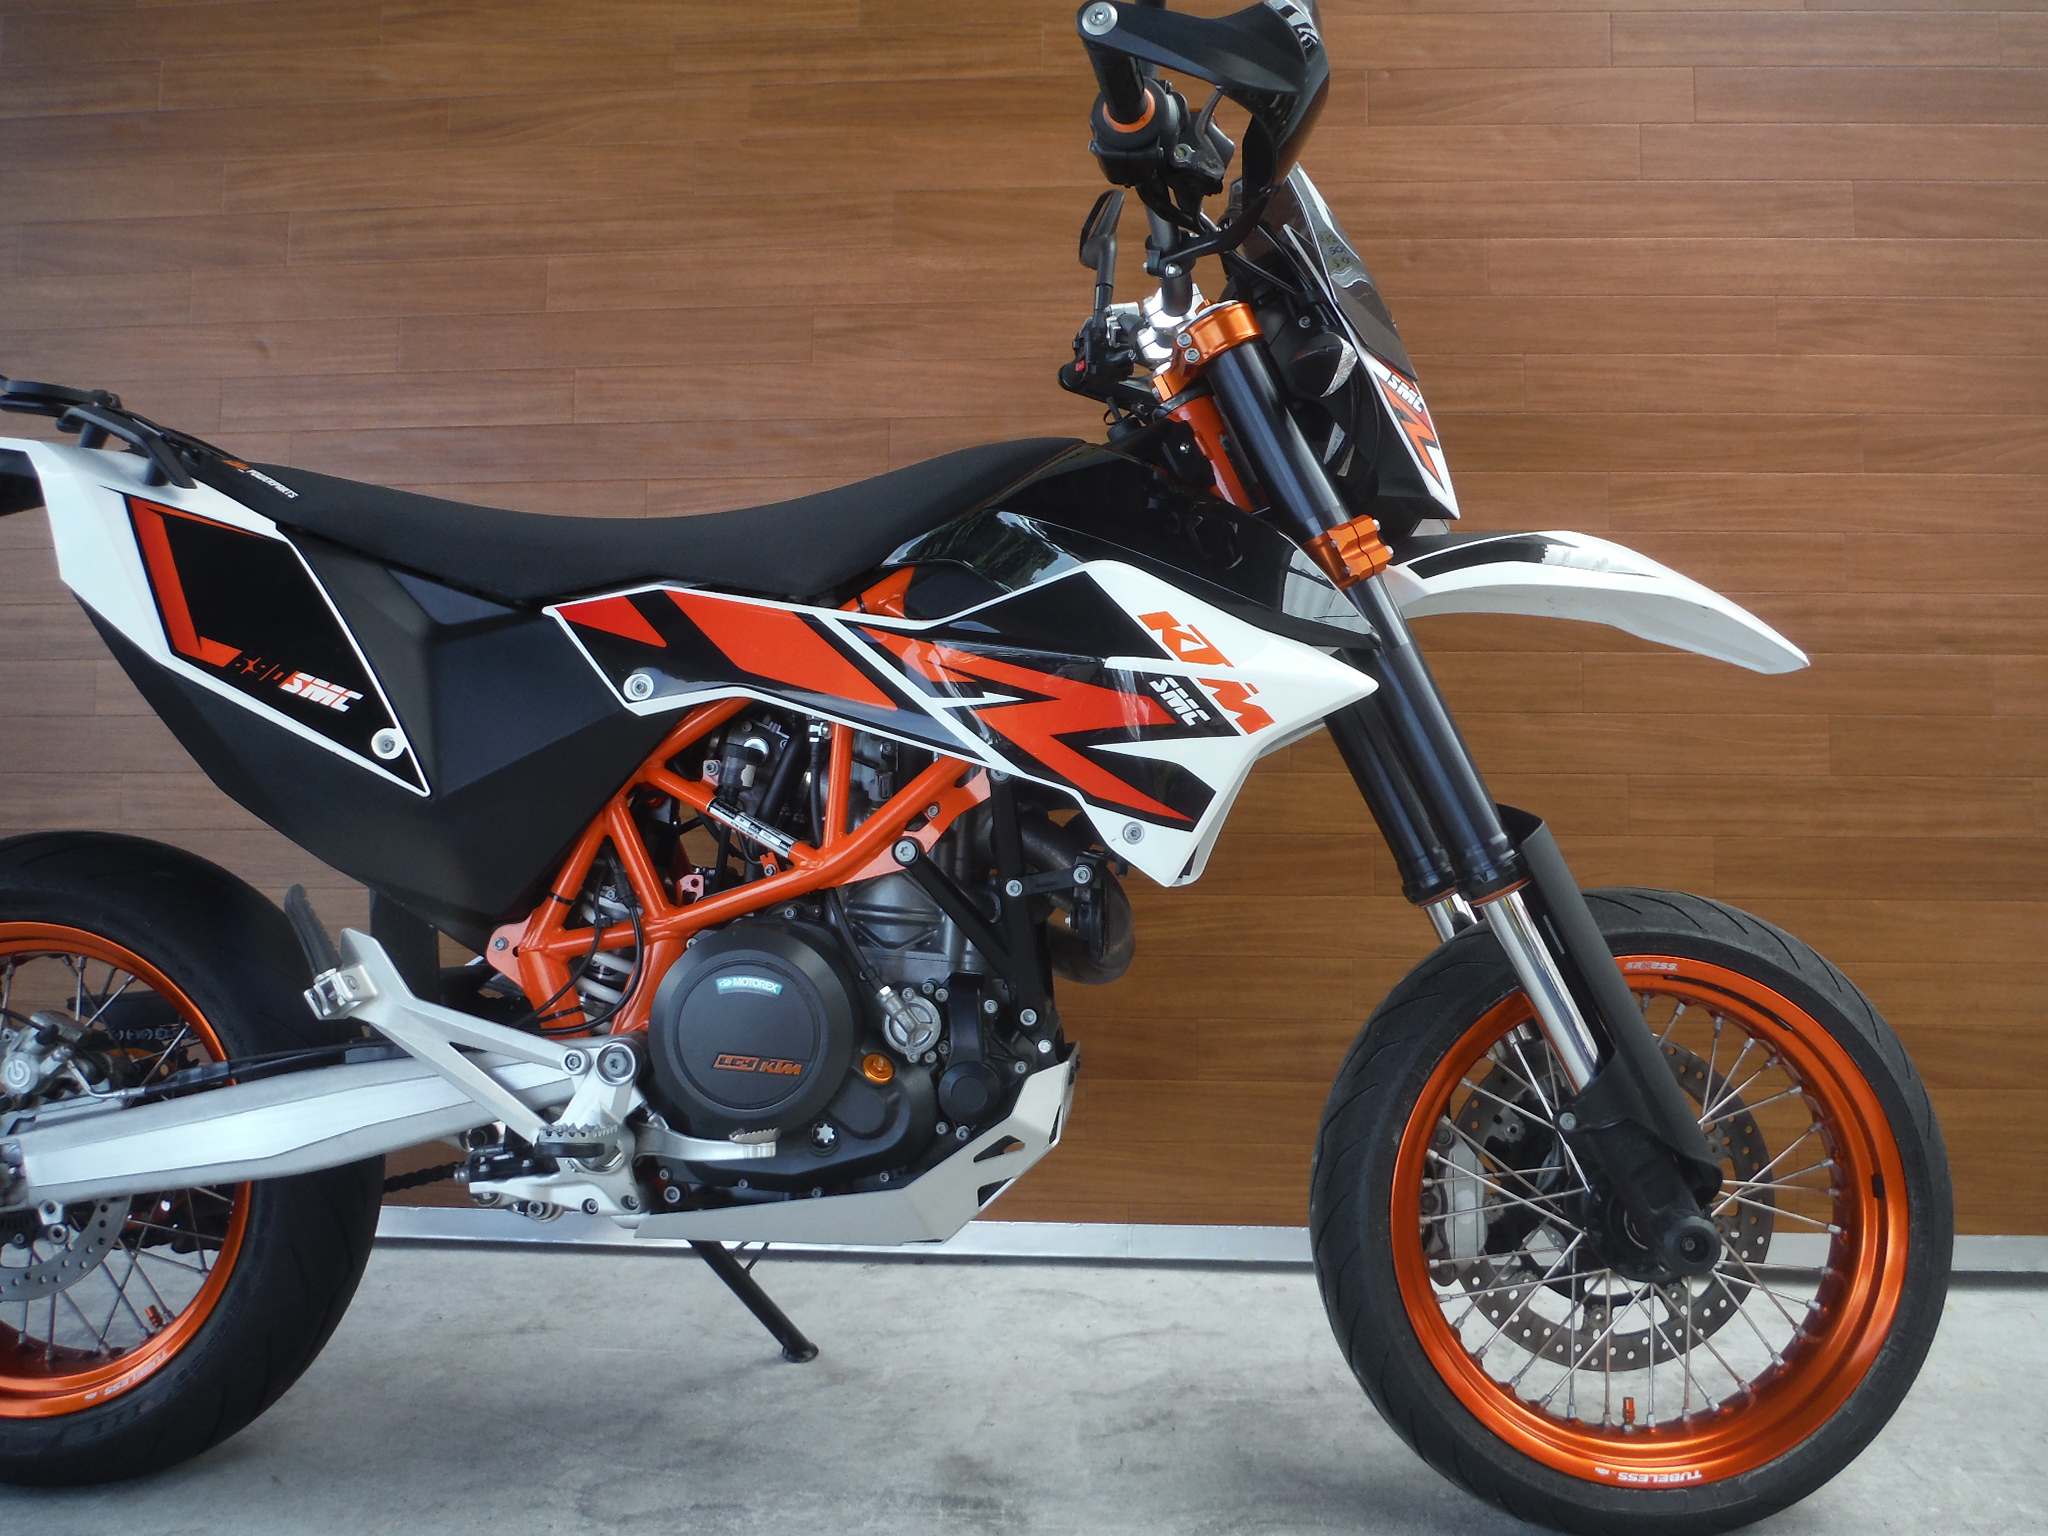 熊本中古車バイク情報 Ktm 690smcr 690 オレンジ 熊本のバイクショップ アール バイクの新車 中古 車販売や買取 レンタルバイクのことならおまかせください